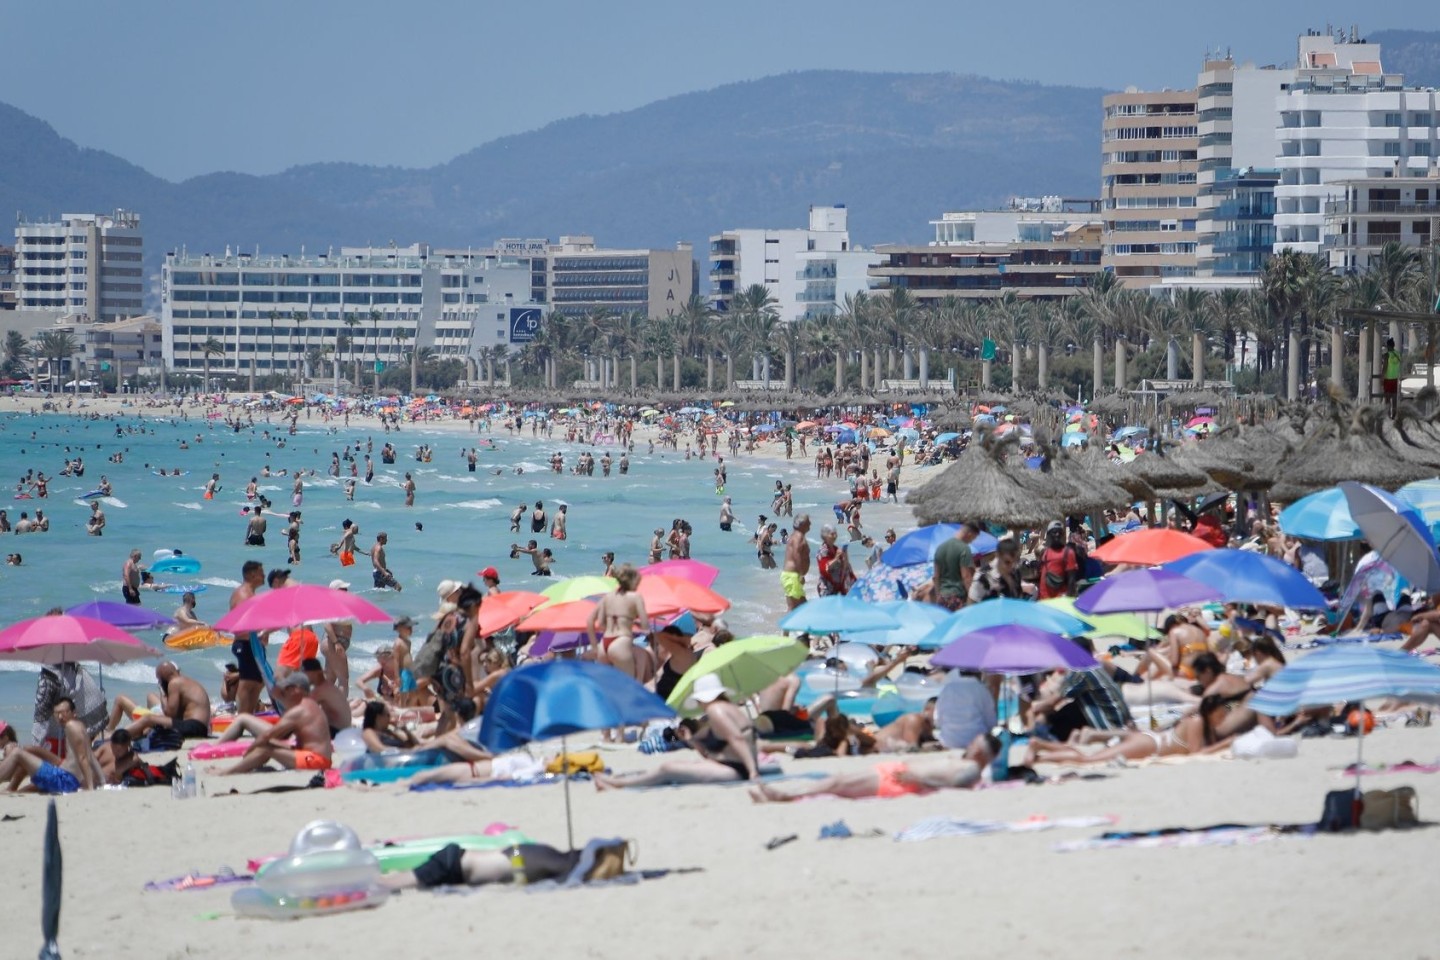 Touristen am Strand von Arenal. Corona-Reisebeschränkungen werden auf Mallorca deutlich gelockert oder fallen ganz.